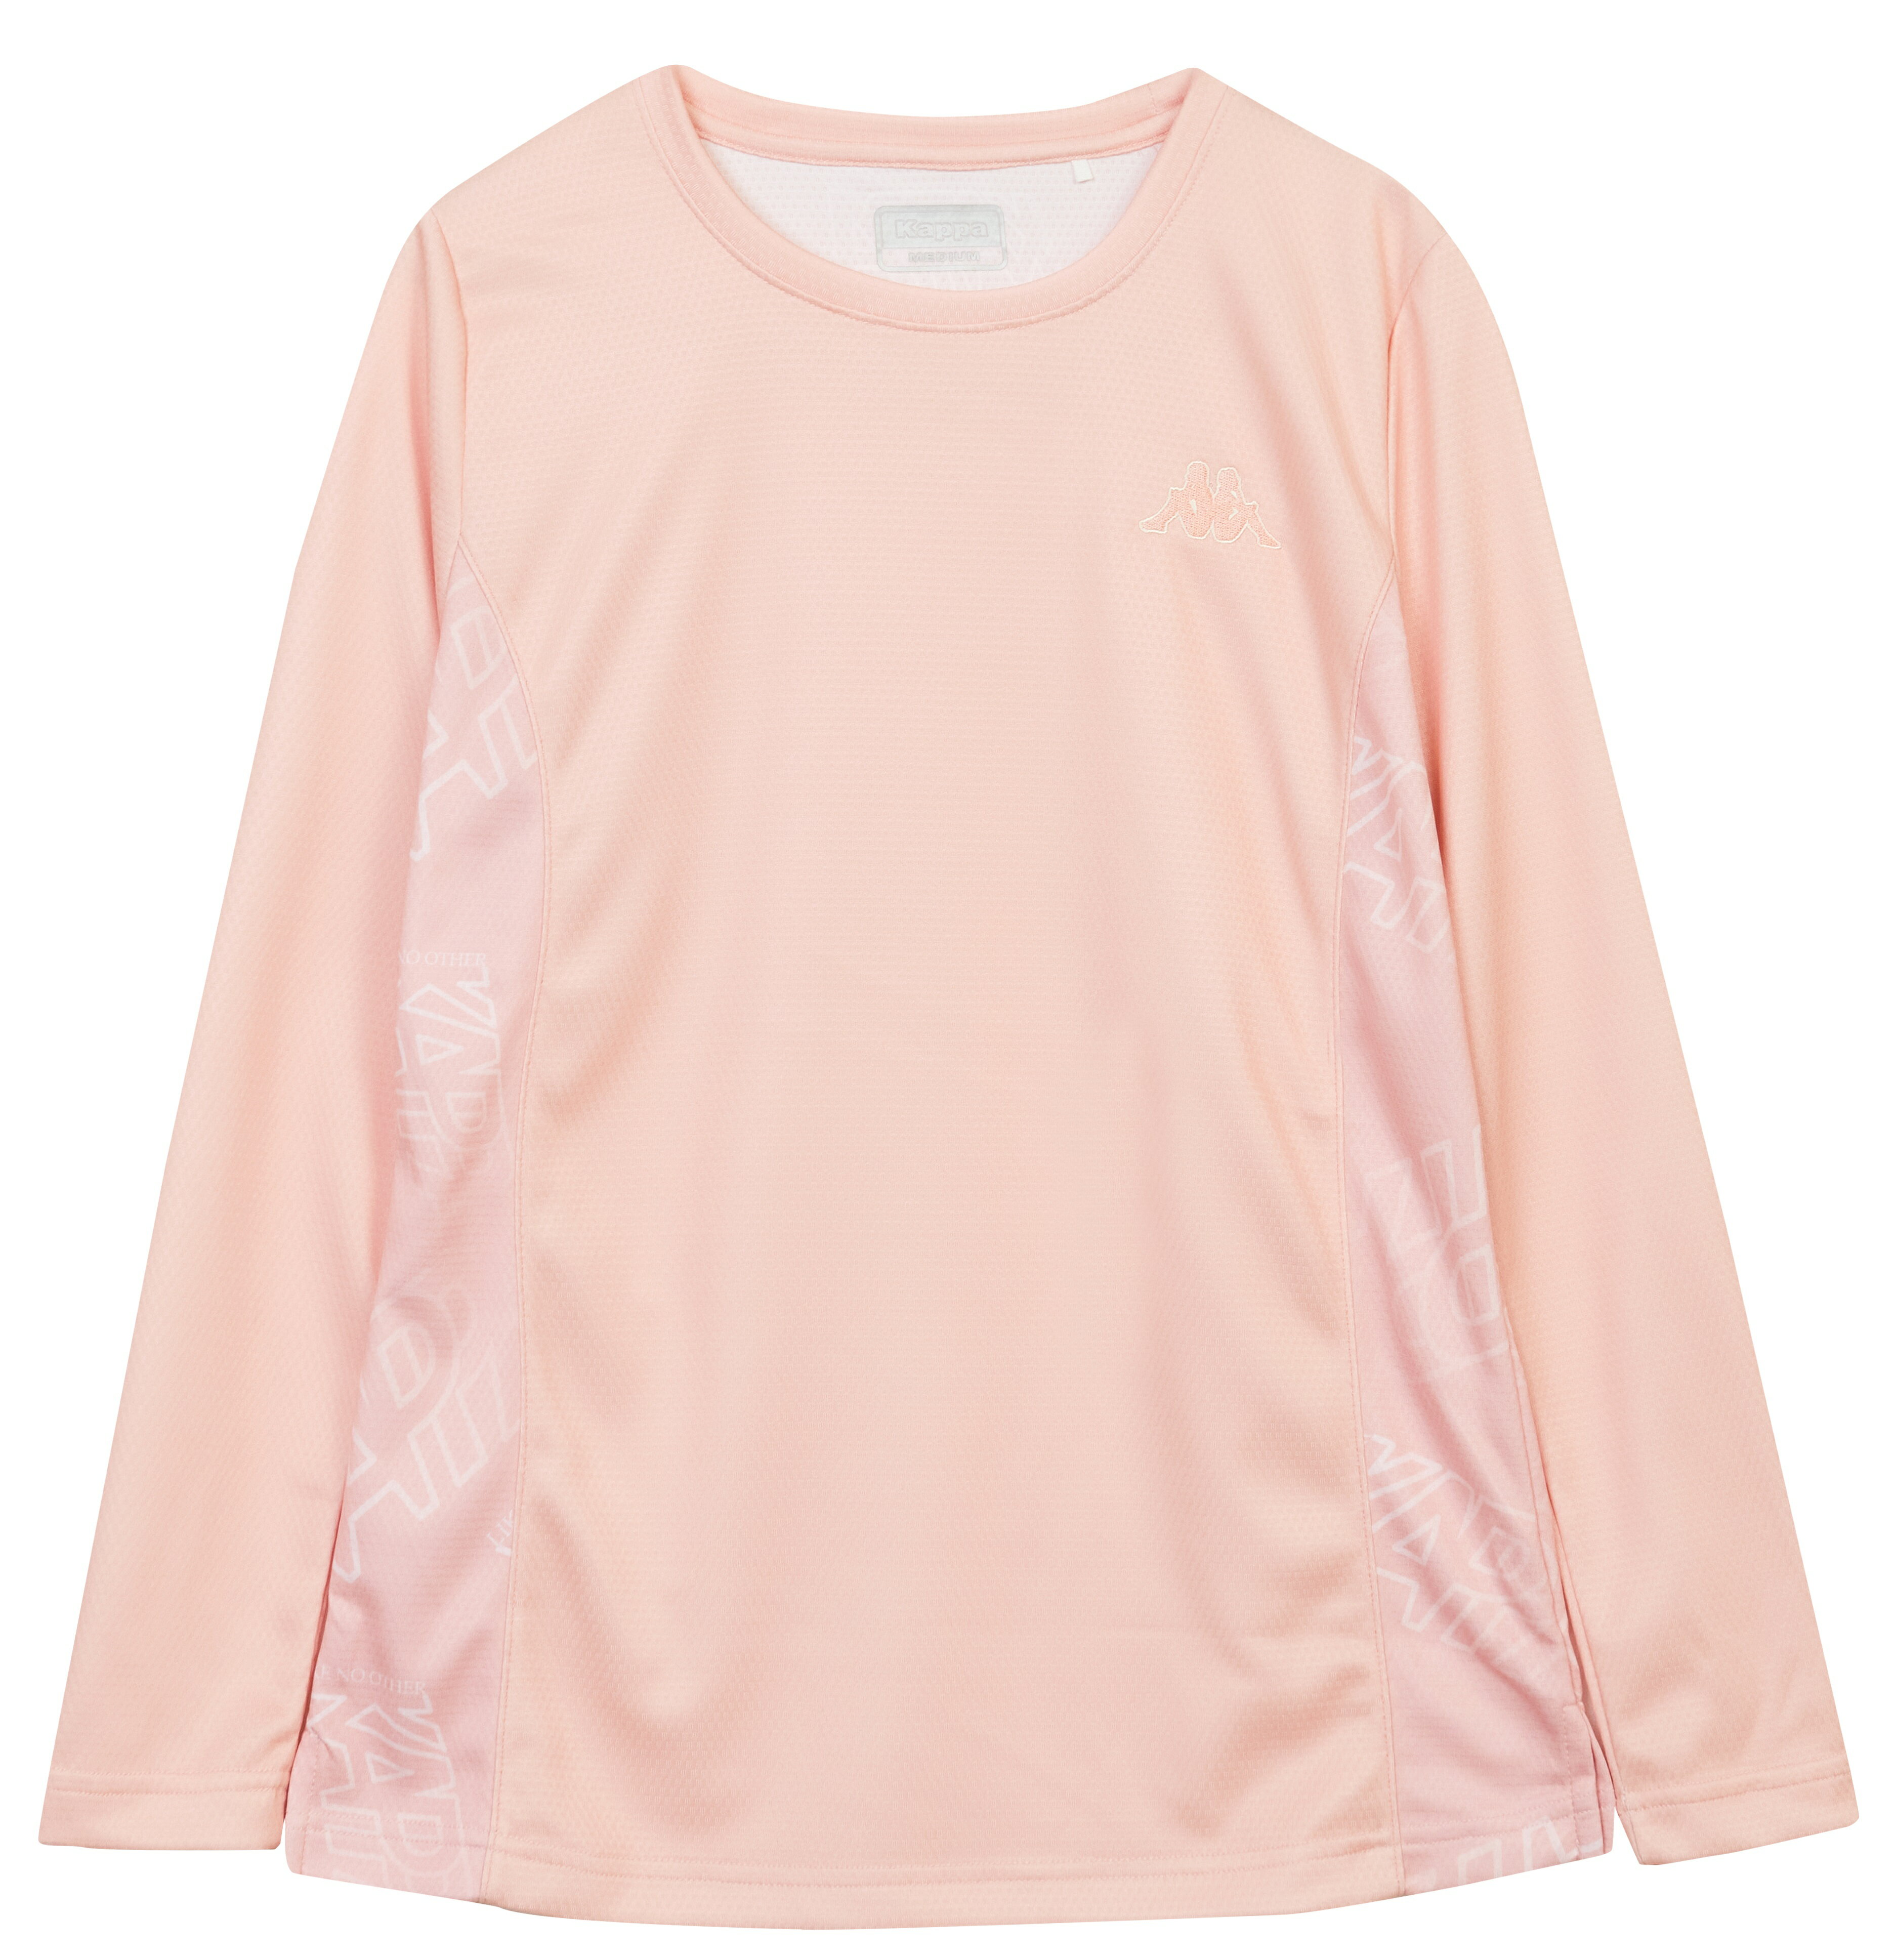 義大利品牌 Kappa 女款 拼接設計 休閒長袖T恤 長袖上衣 (361Q2ZW-W71/005)粉橘、黑色